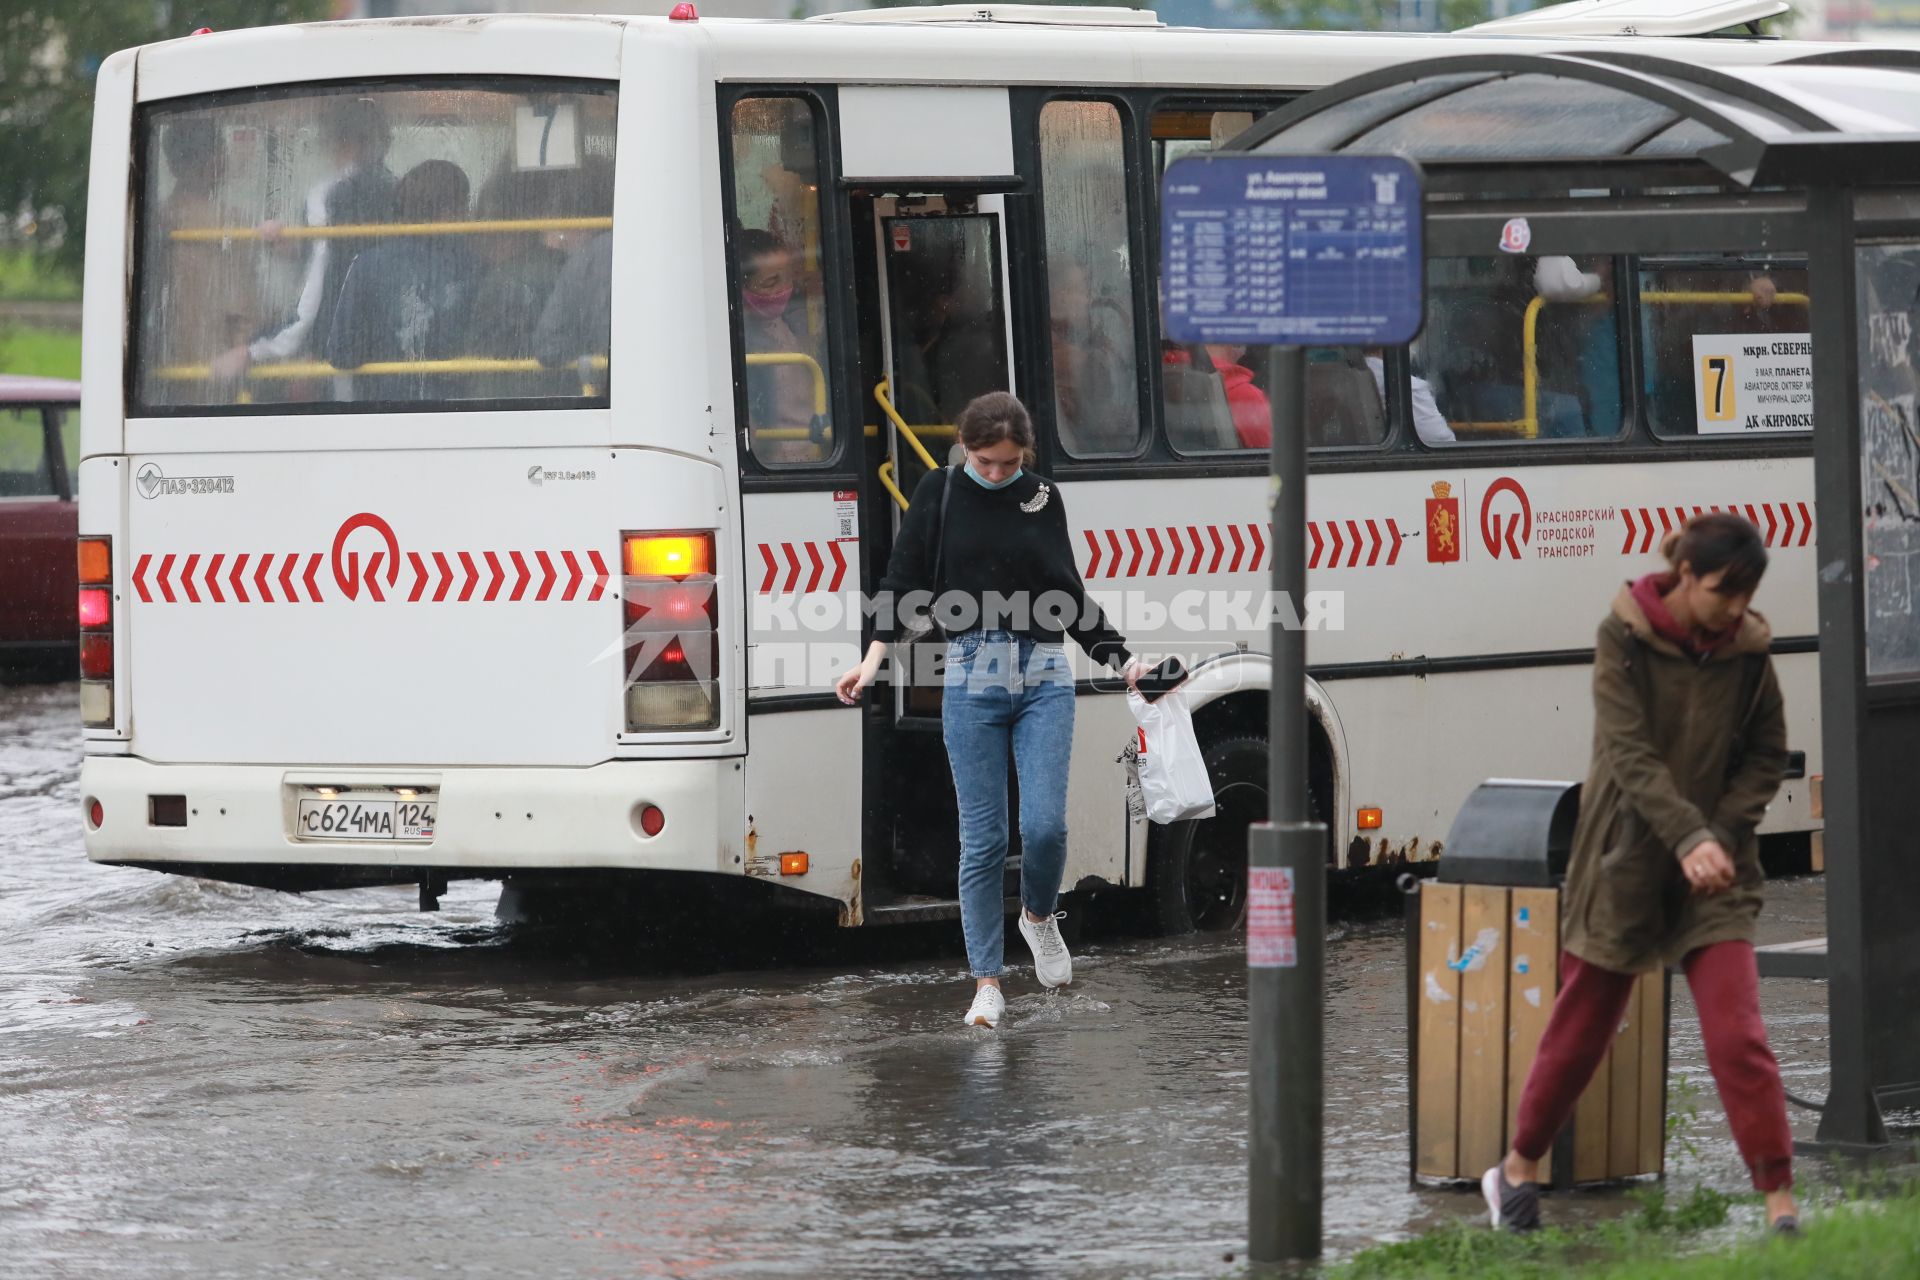 Красноярск. Пешеходы идут по лужам во время дождя.